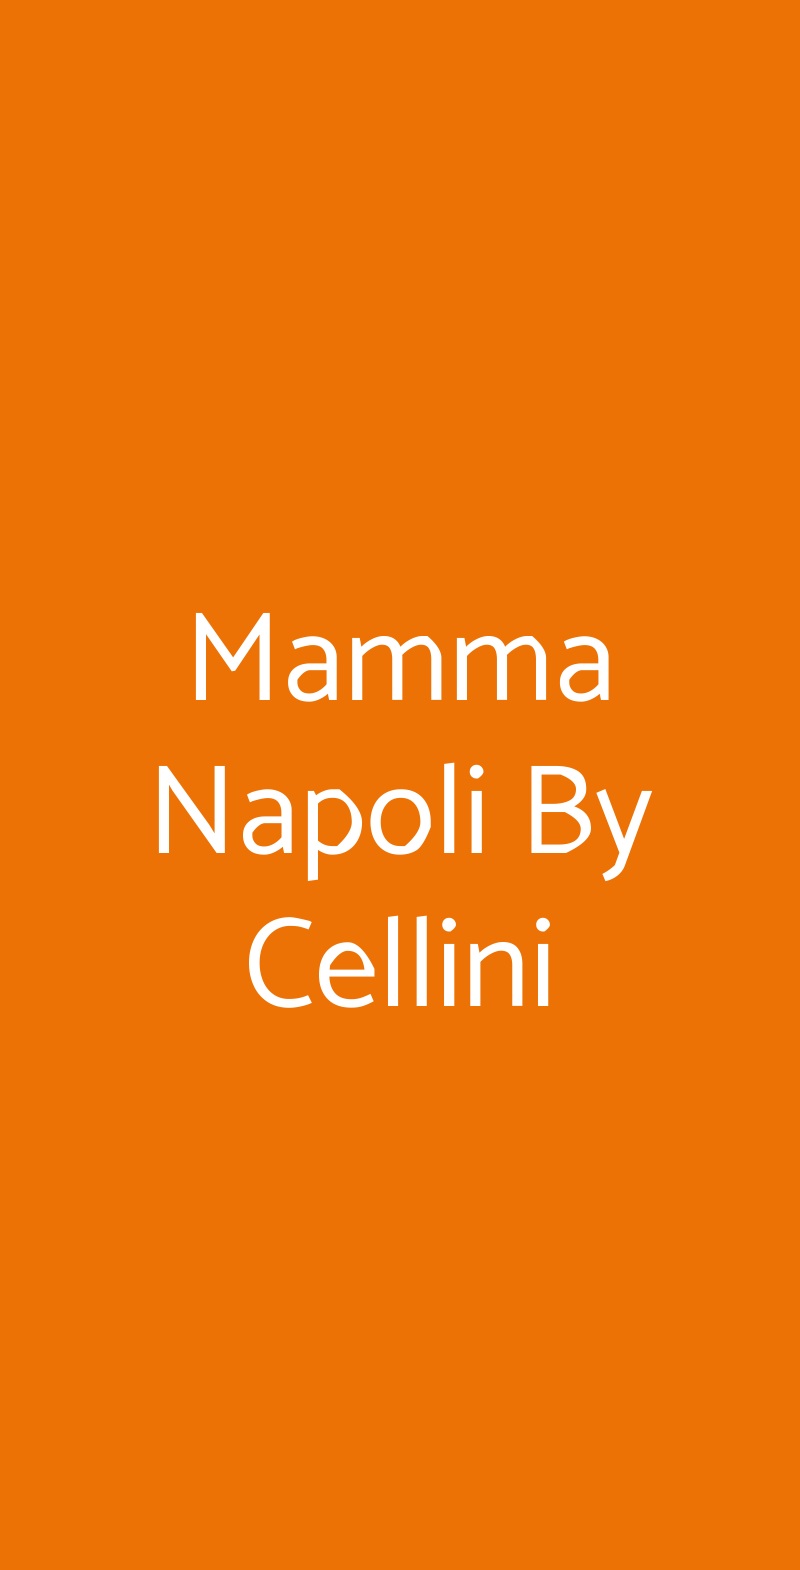 Mamma Napoli By Cellini Firenze menù 1 pagina